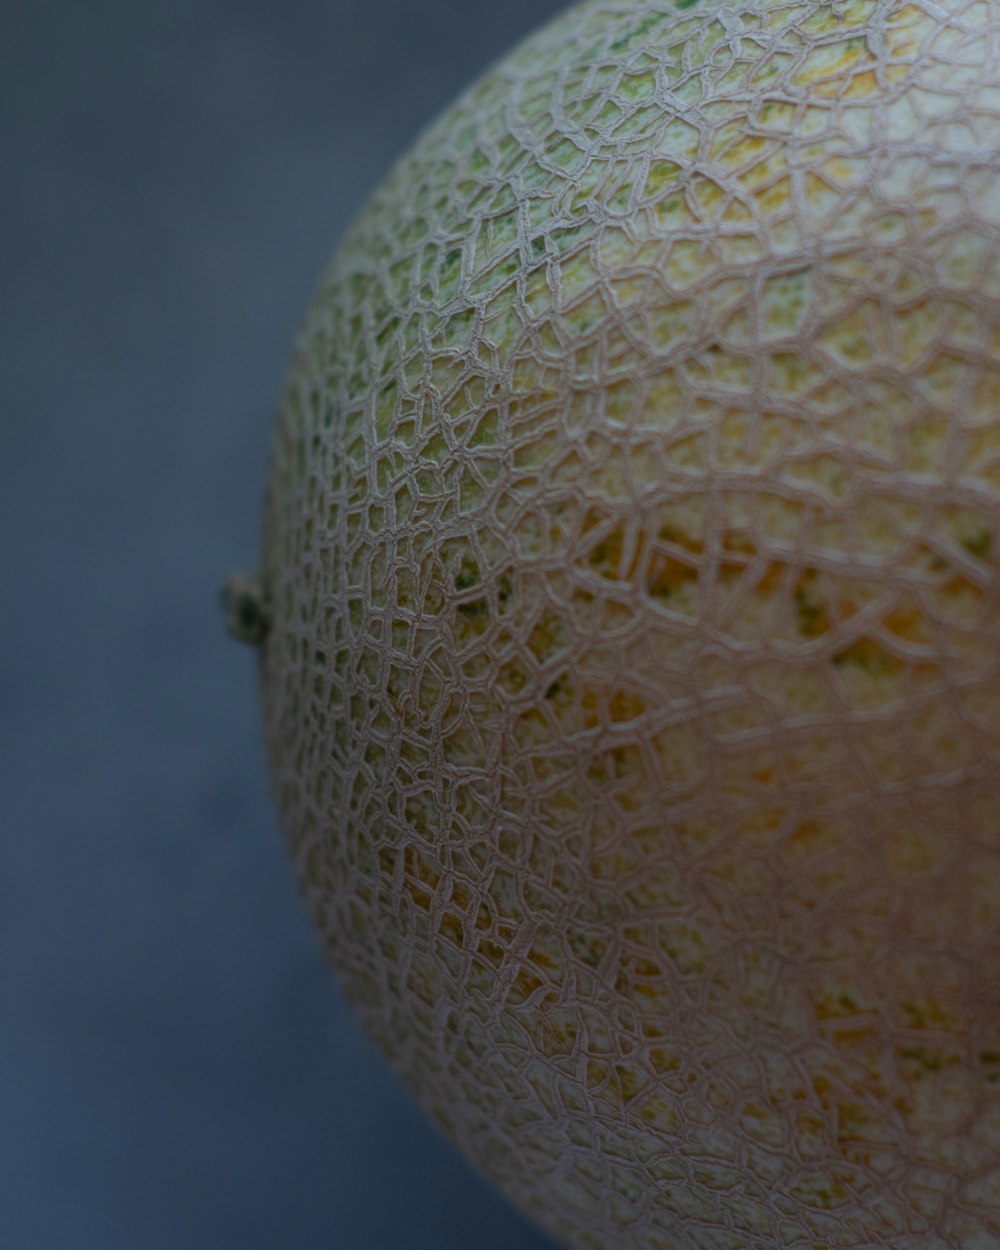 close up photo of round white fruit